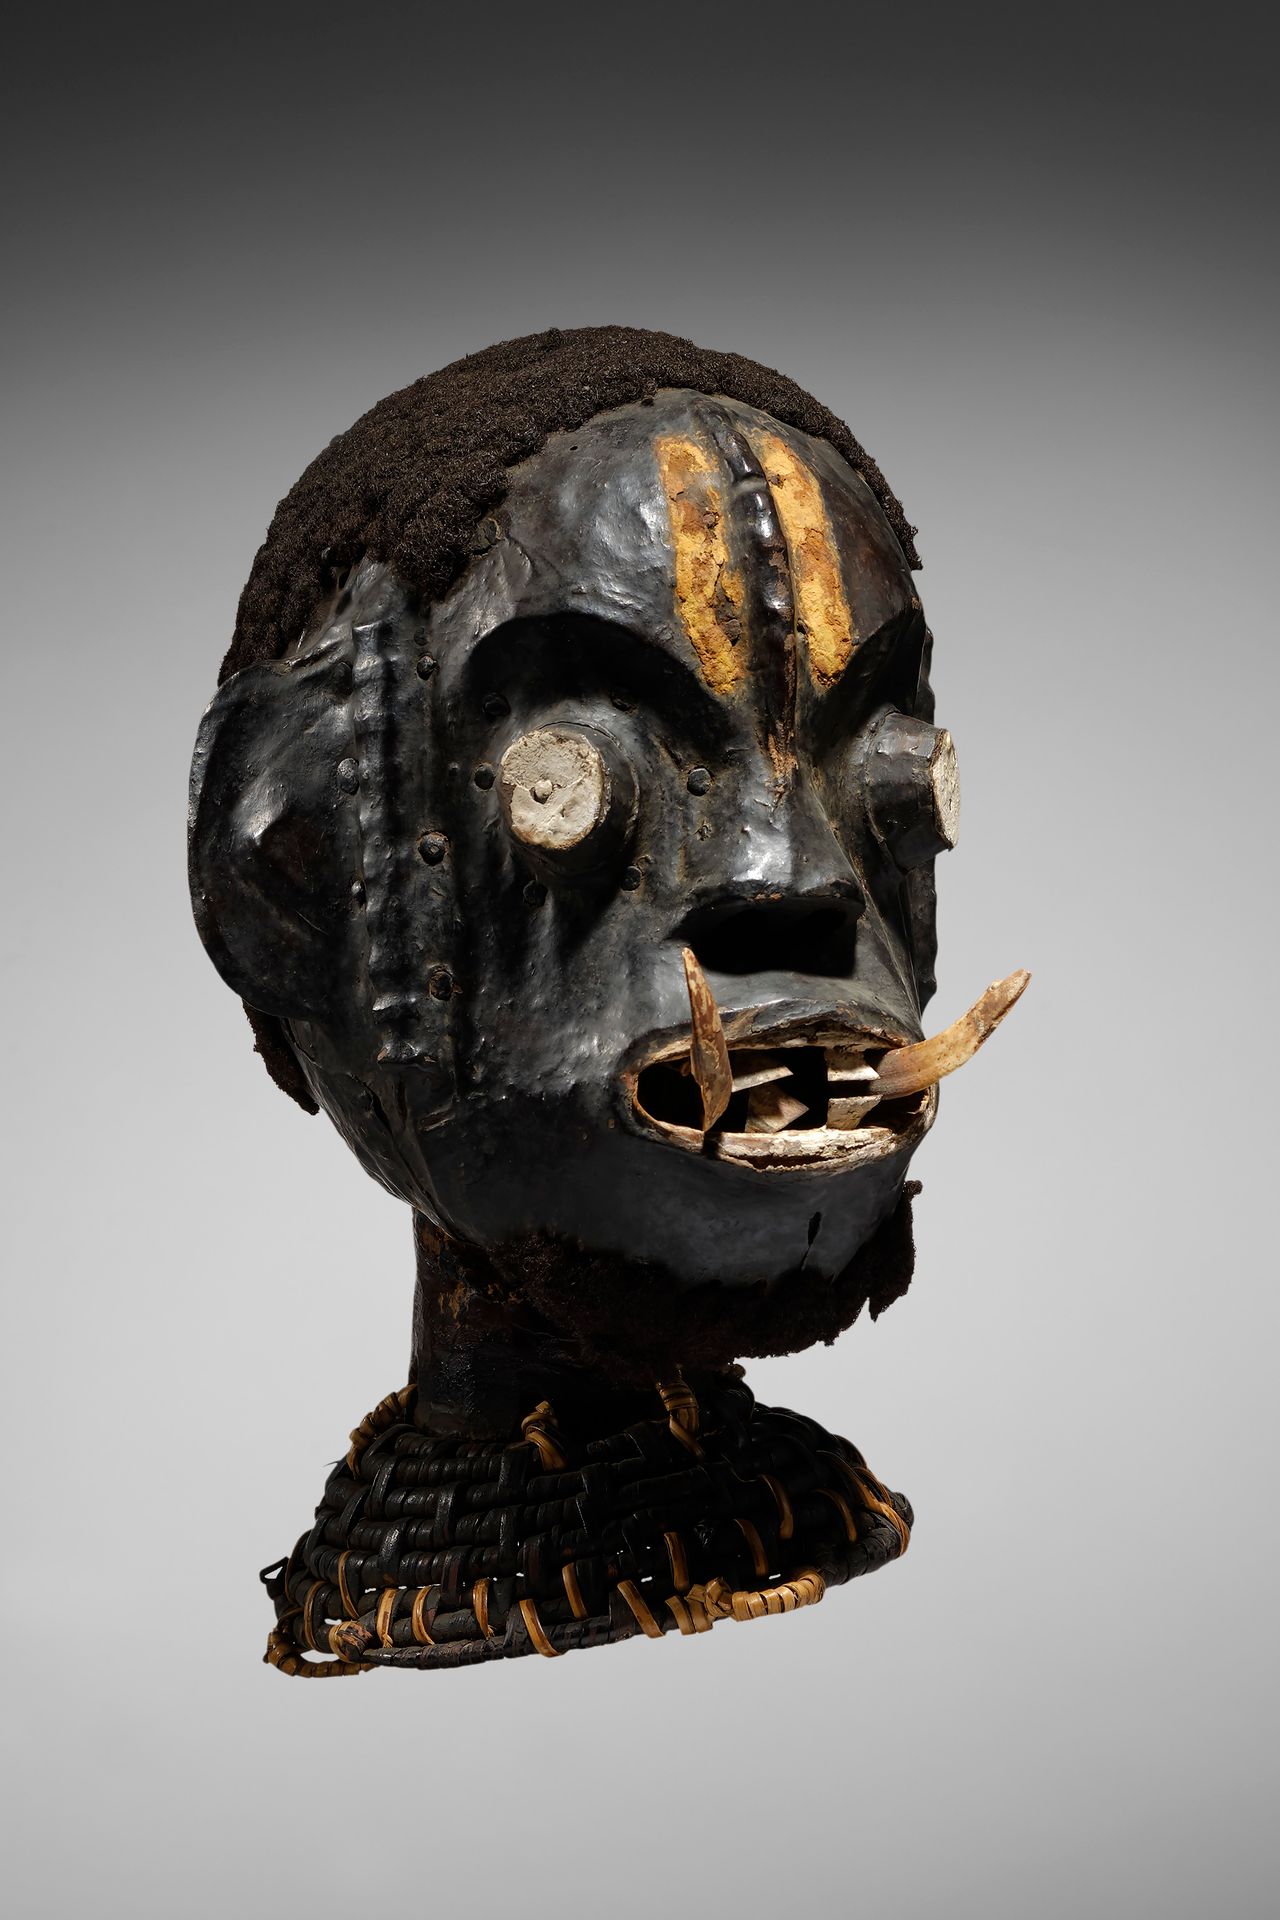 Ekoi Dance Headcrest Nigeria

Holz, Leder, Rattan, Haare und Hauer - 37 cm

Herk&hellip;